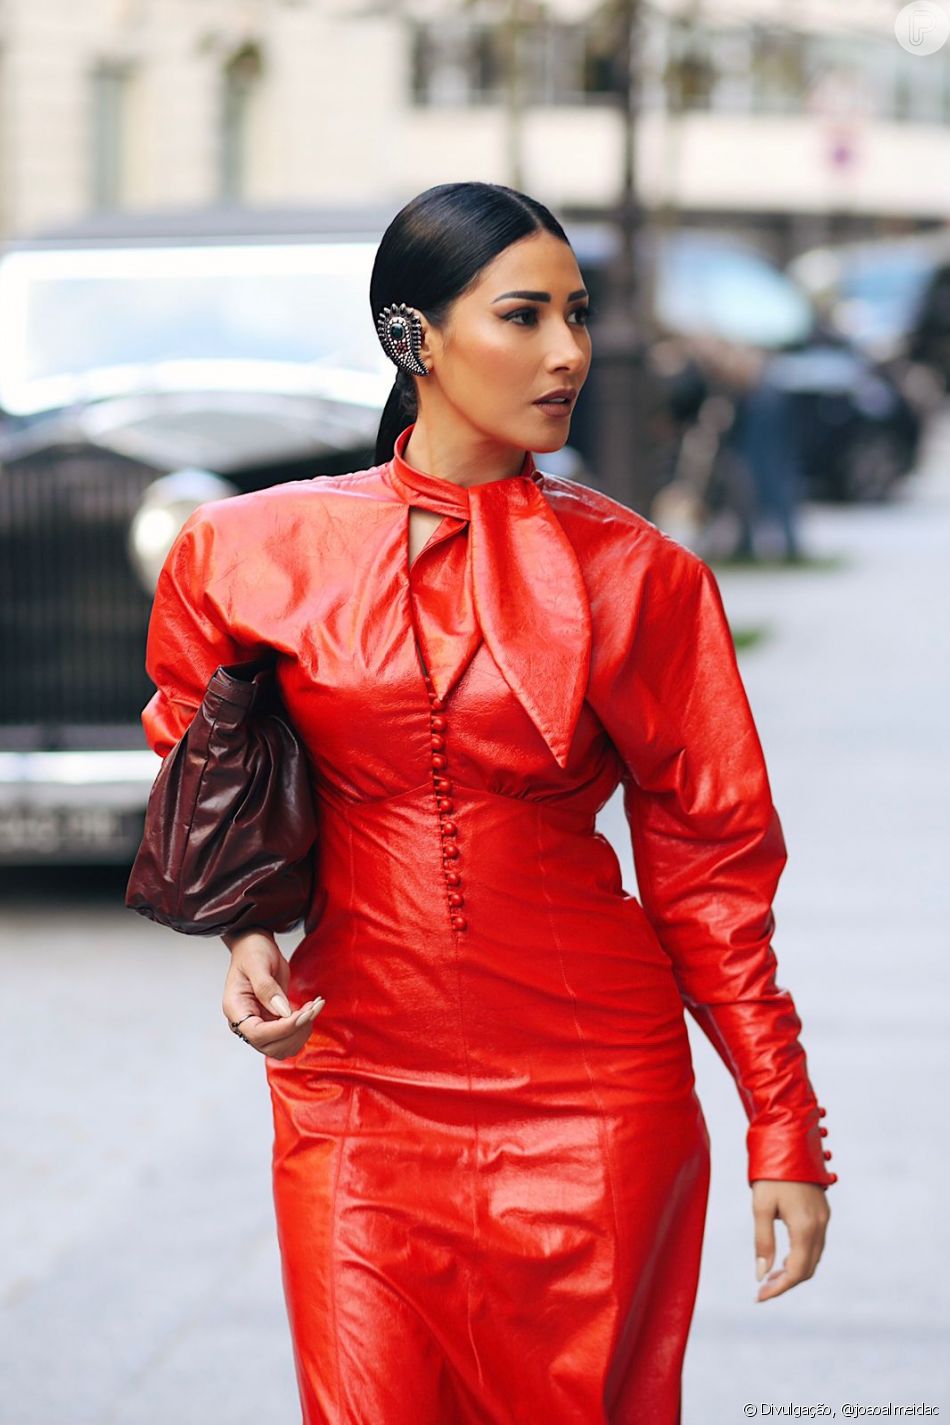 Simaria compareceu à Semana de Moda de Paris usando um vestido vermelho longo